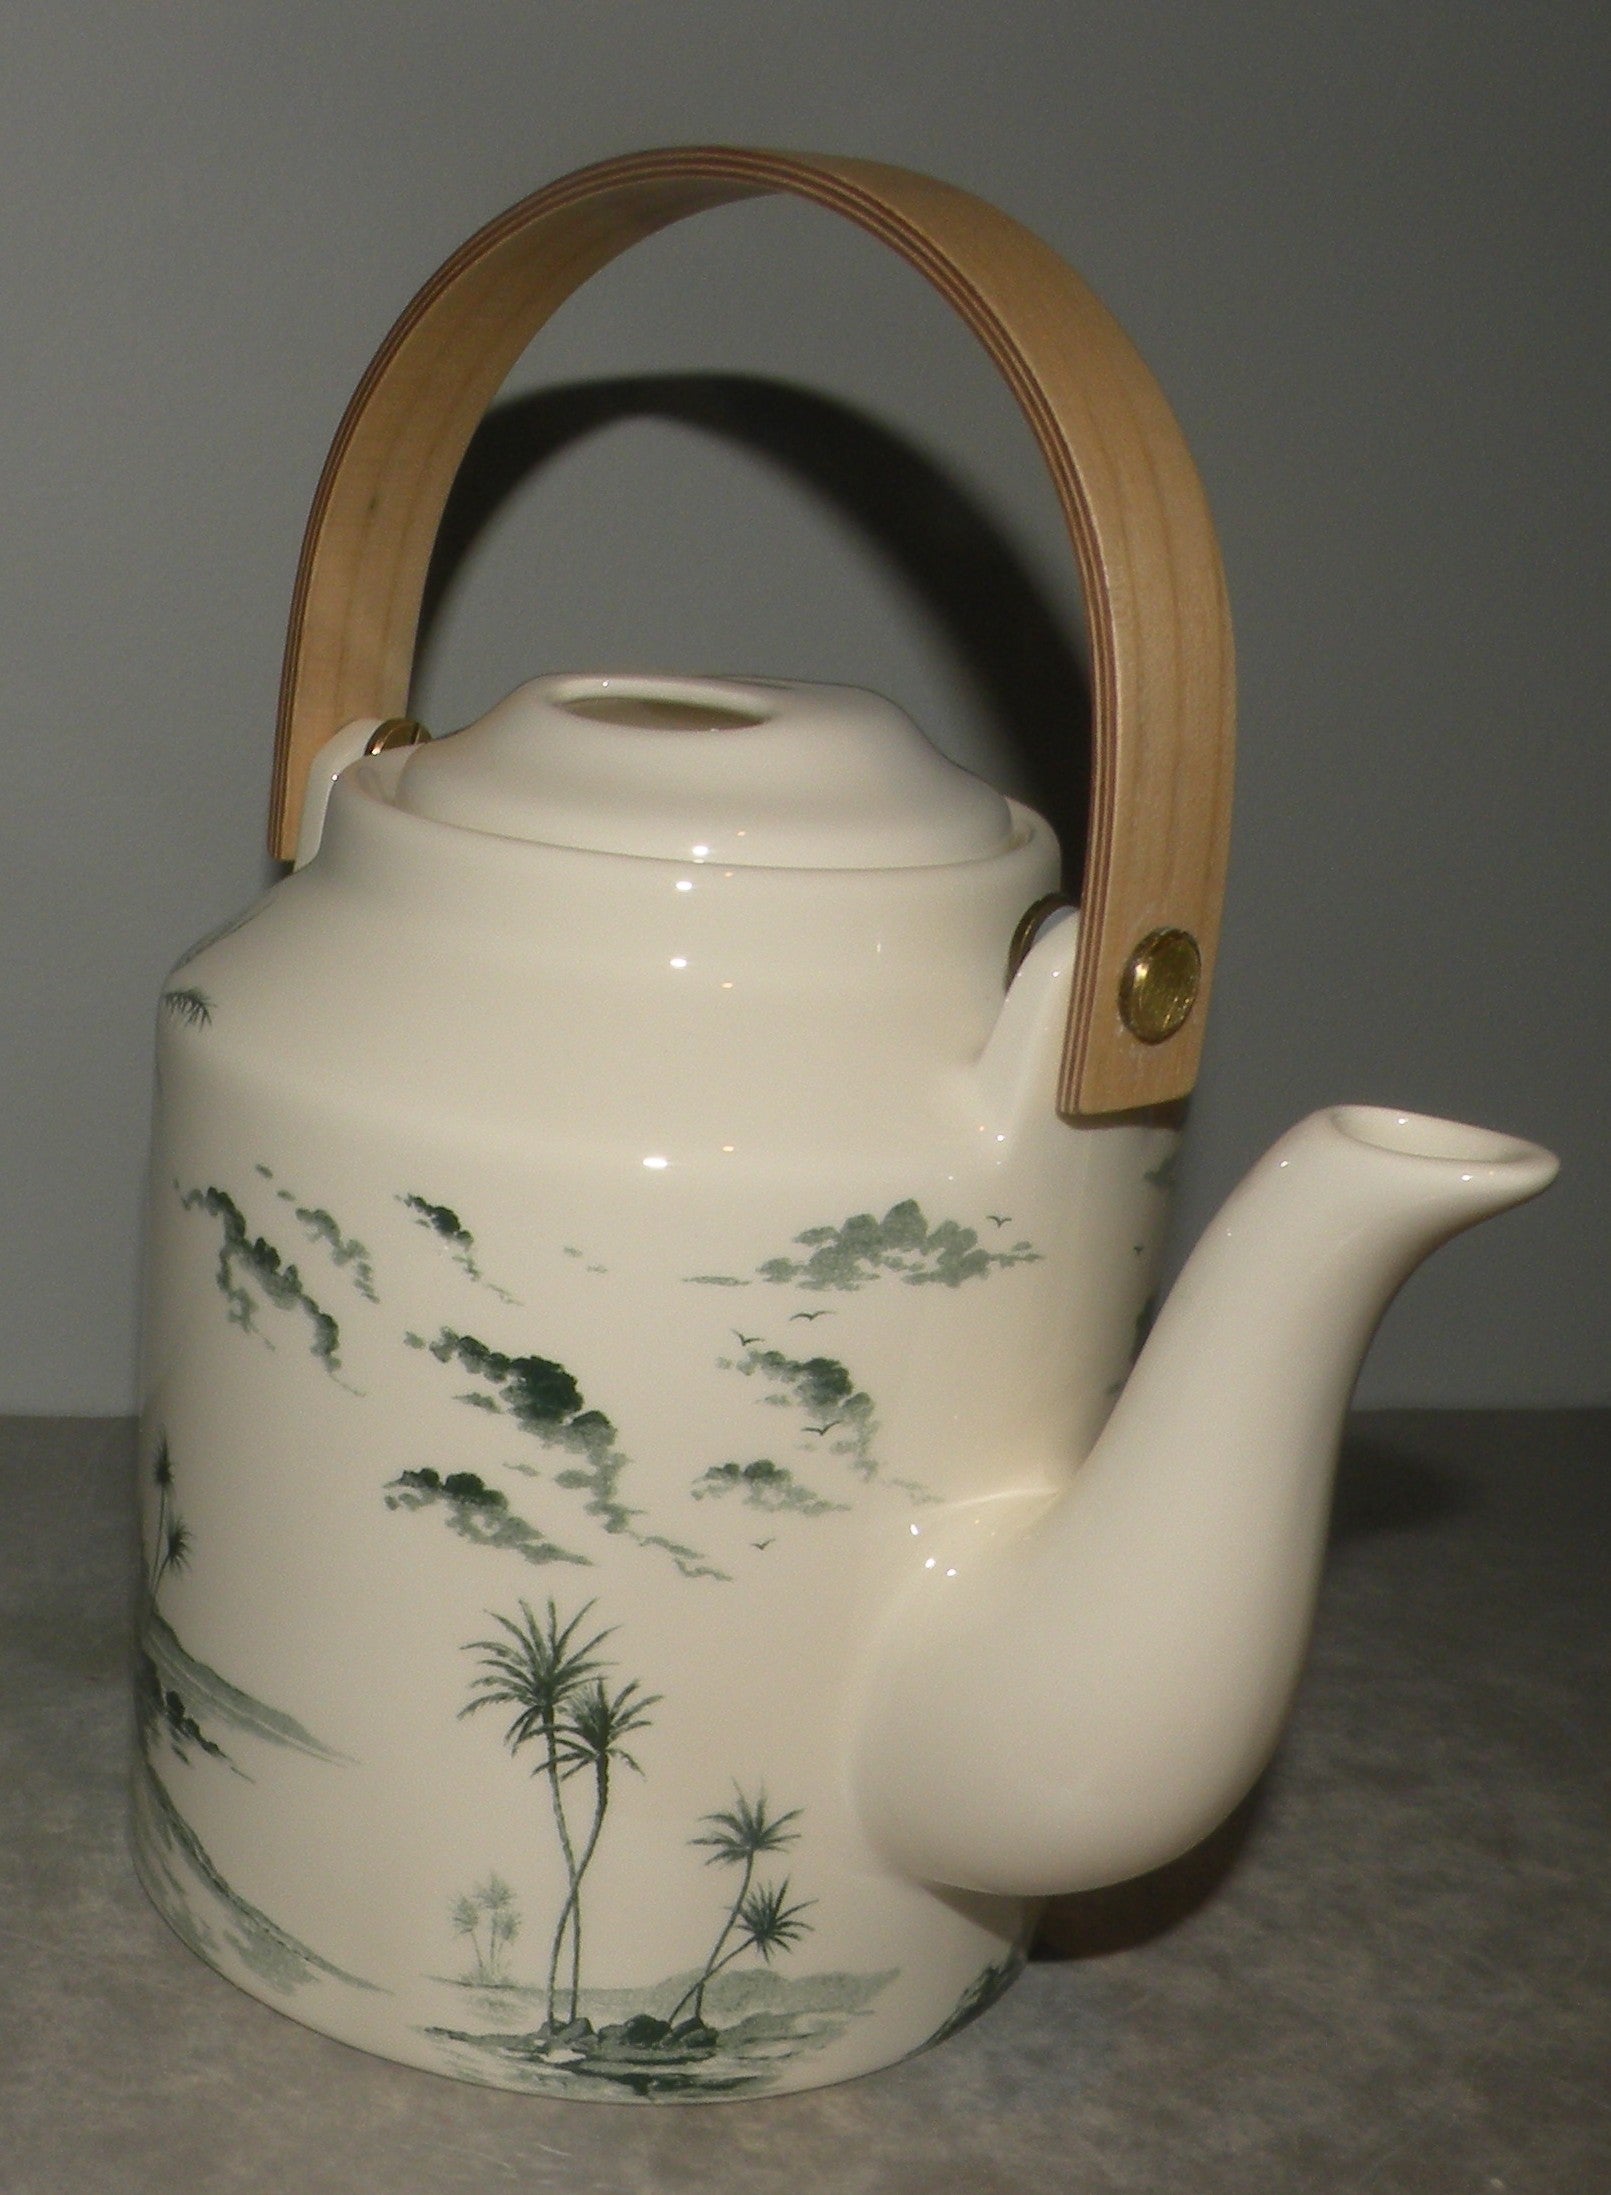 Japanese teapot , Vue d'Orient , Les Depareillees